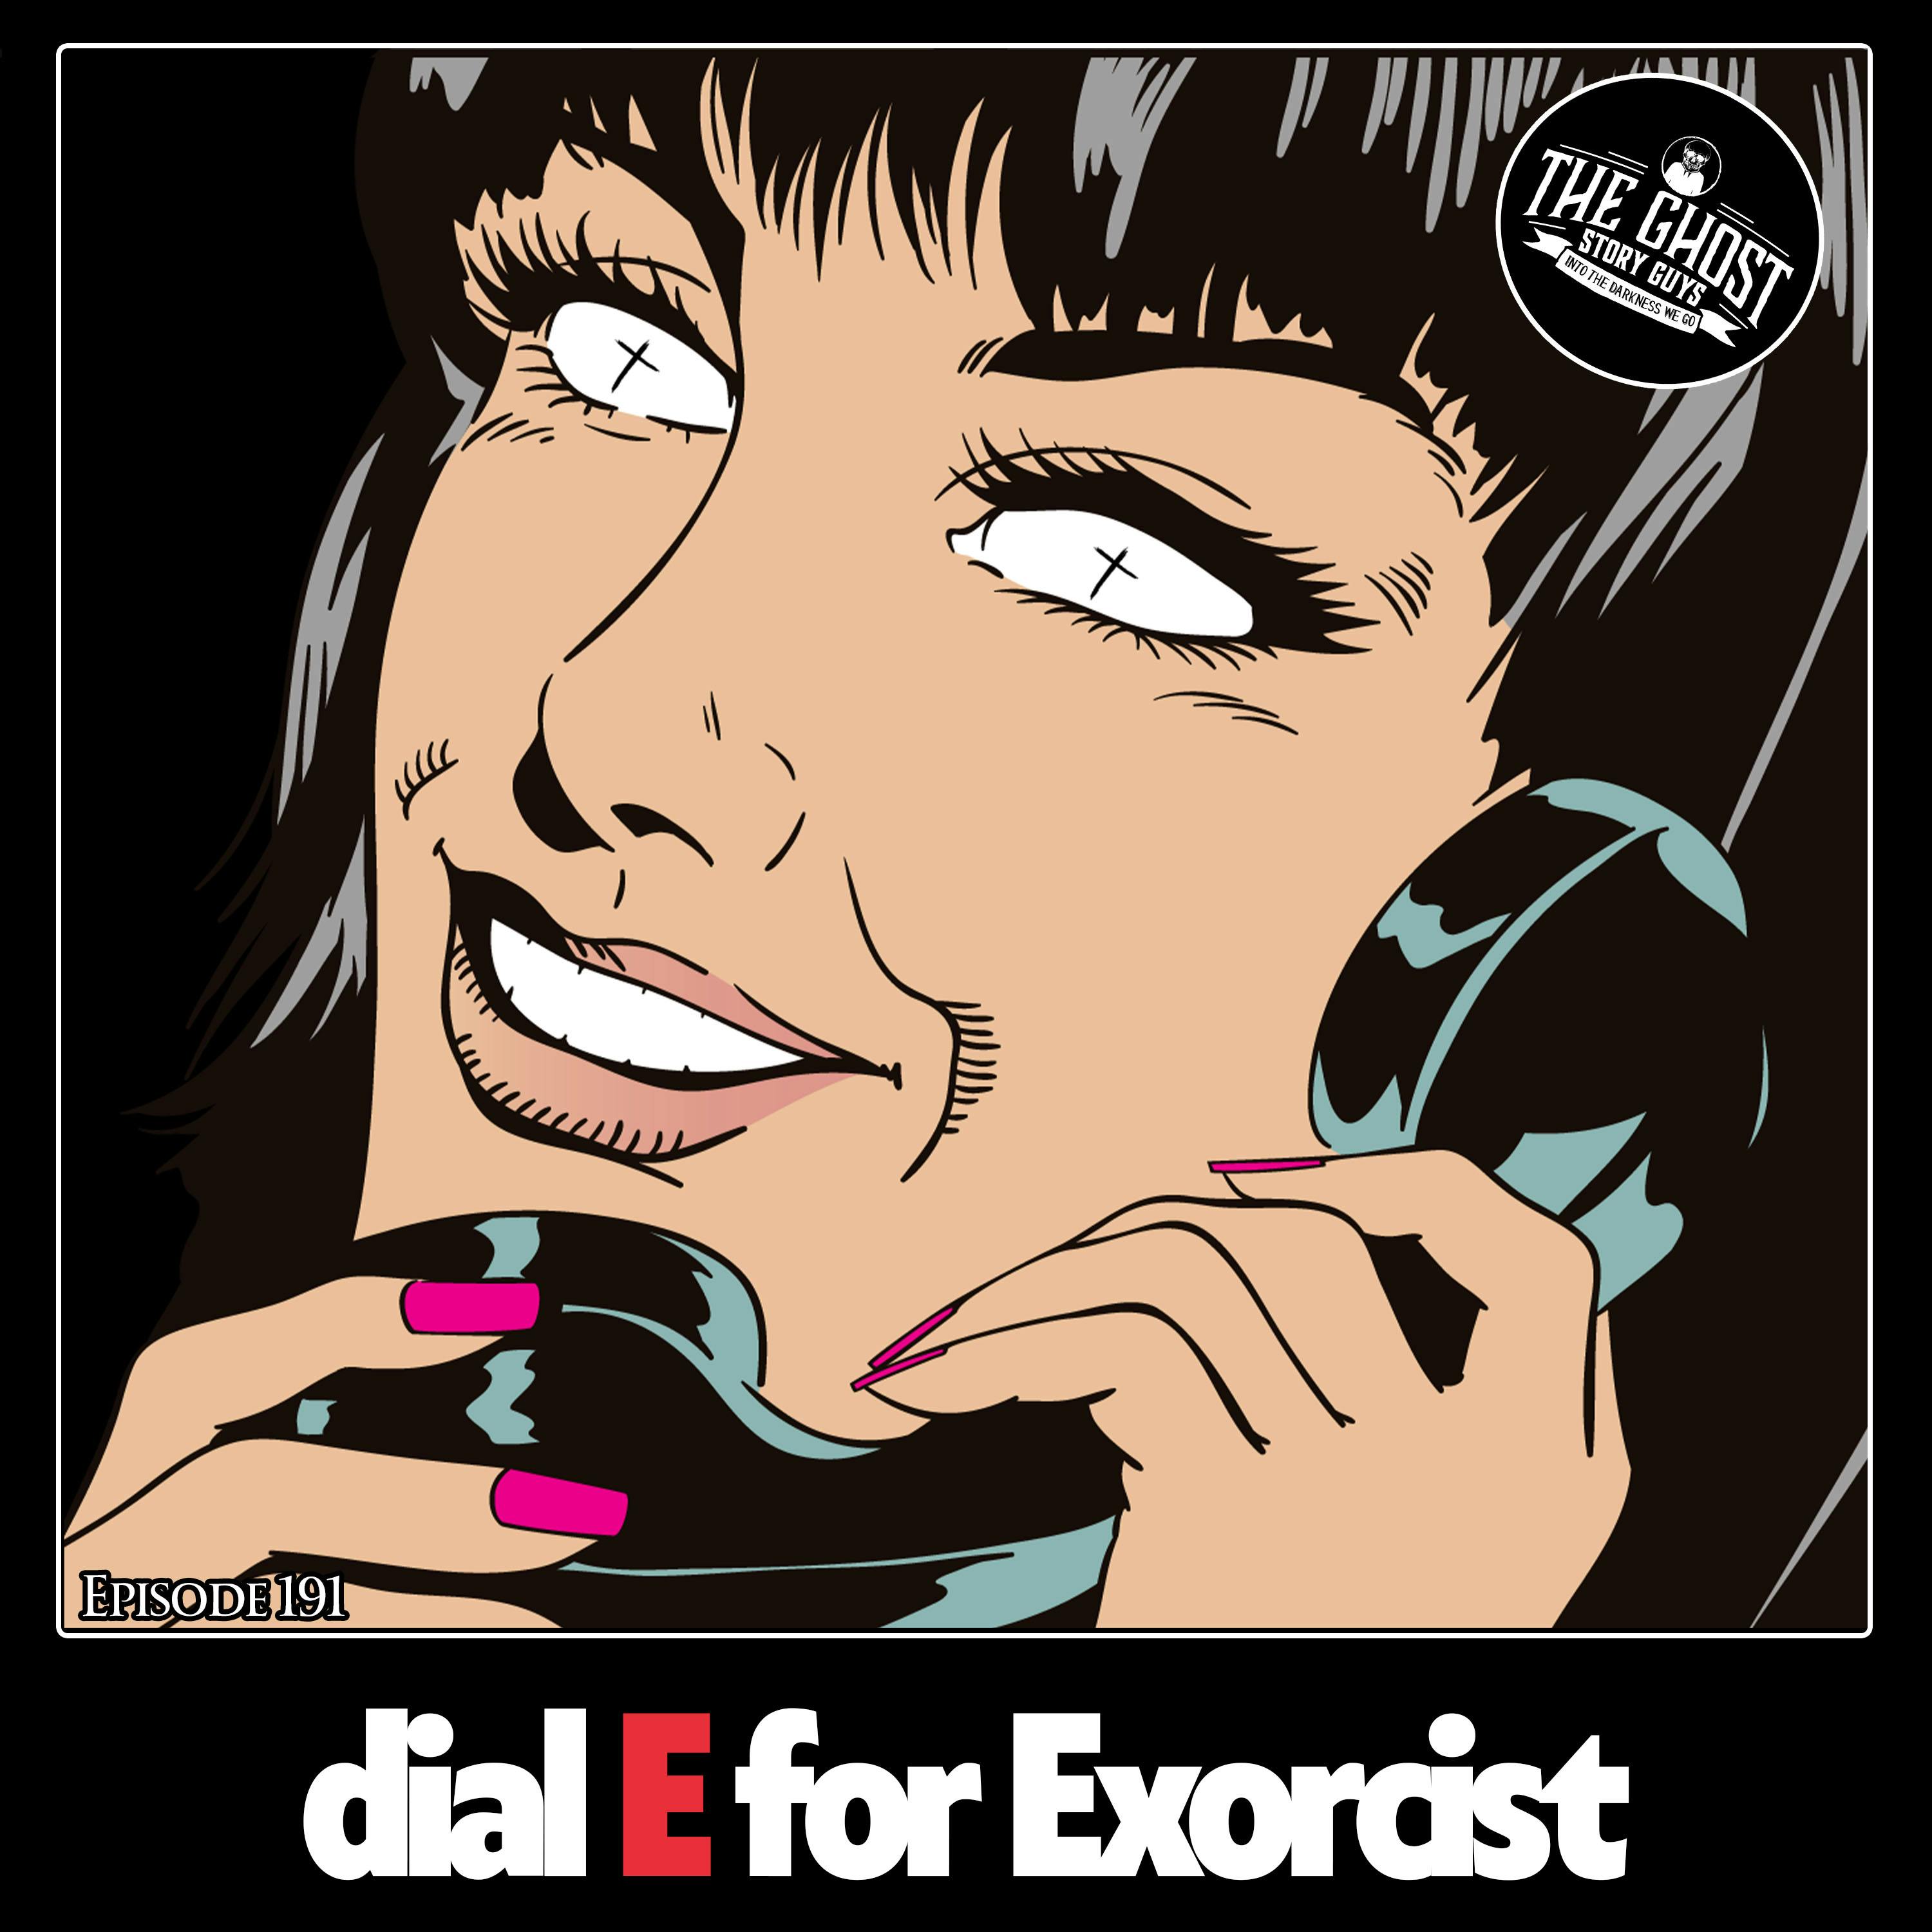 Dial E For Exorcist